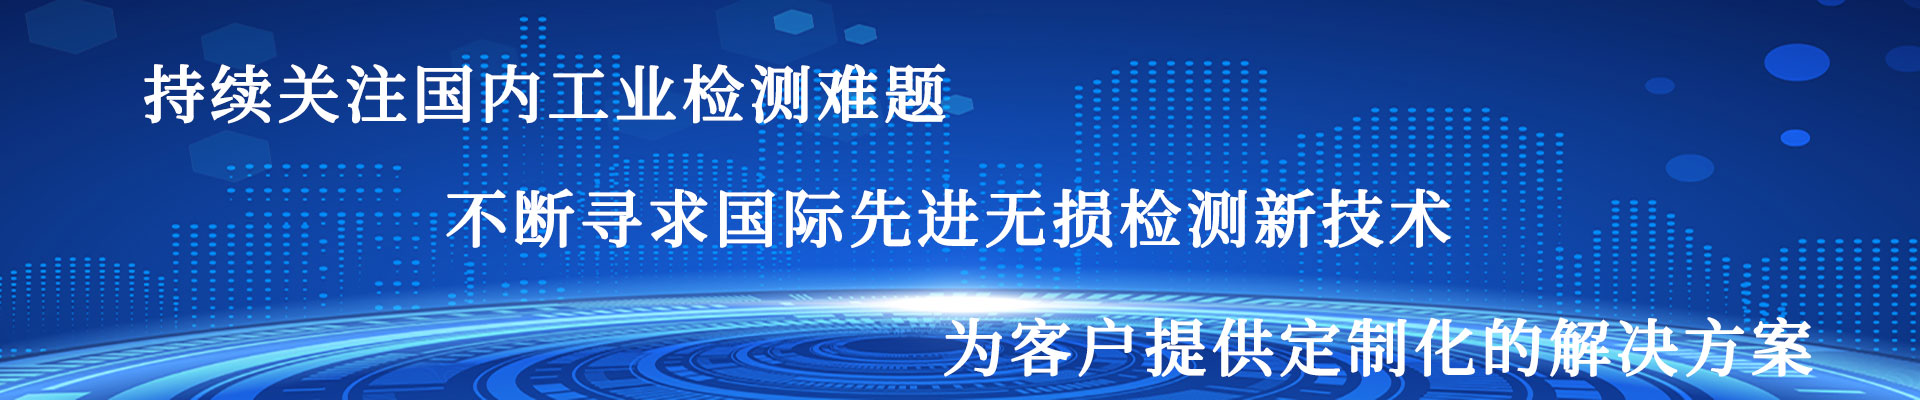 电磁超声测厚仪-高温测厚仪-高温腐蚀检测仪-北京康坦科技有限公司